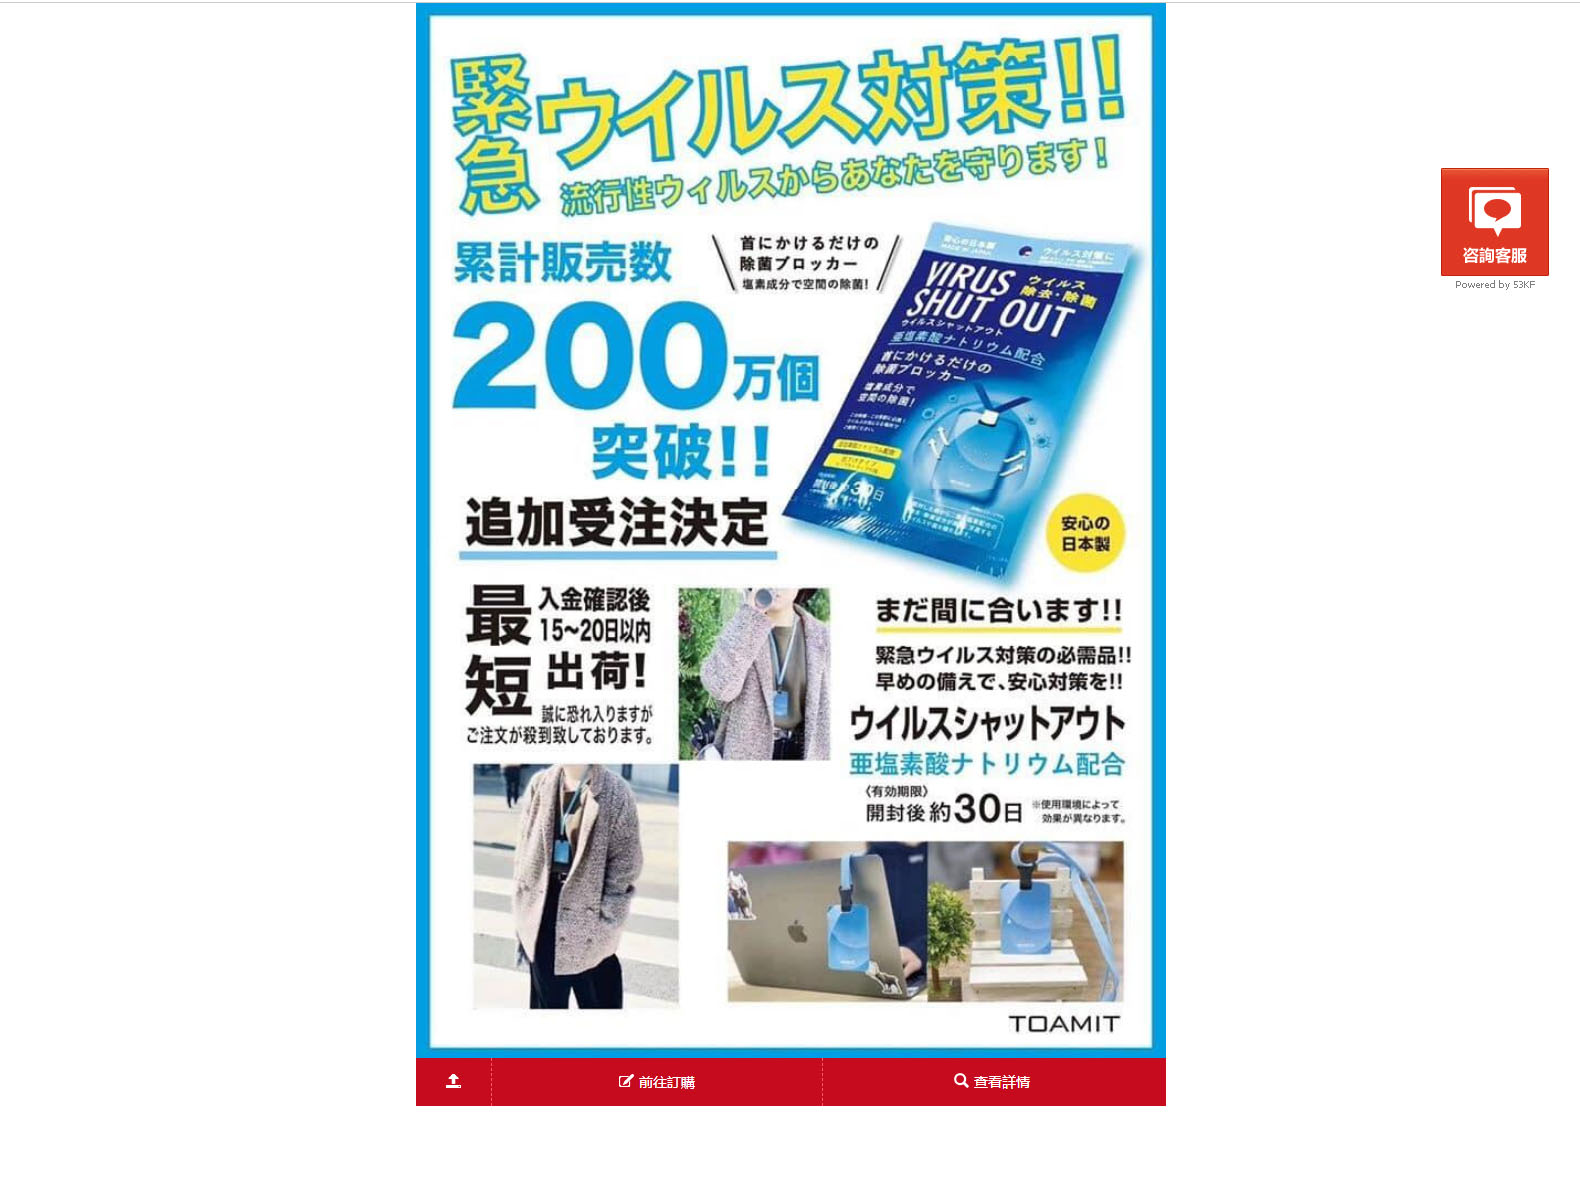 台灣Virus Shut Out除菌消毒卡專賣店-日本空氣除菌卡,隨身滅菌防護卡